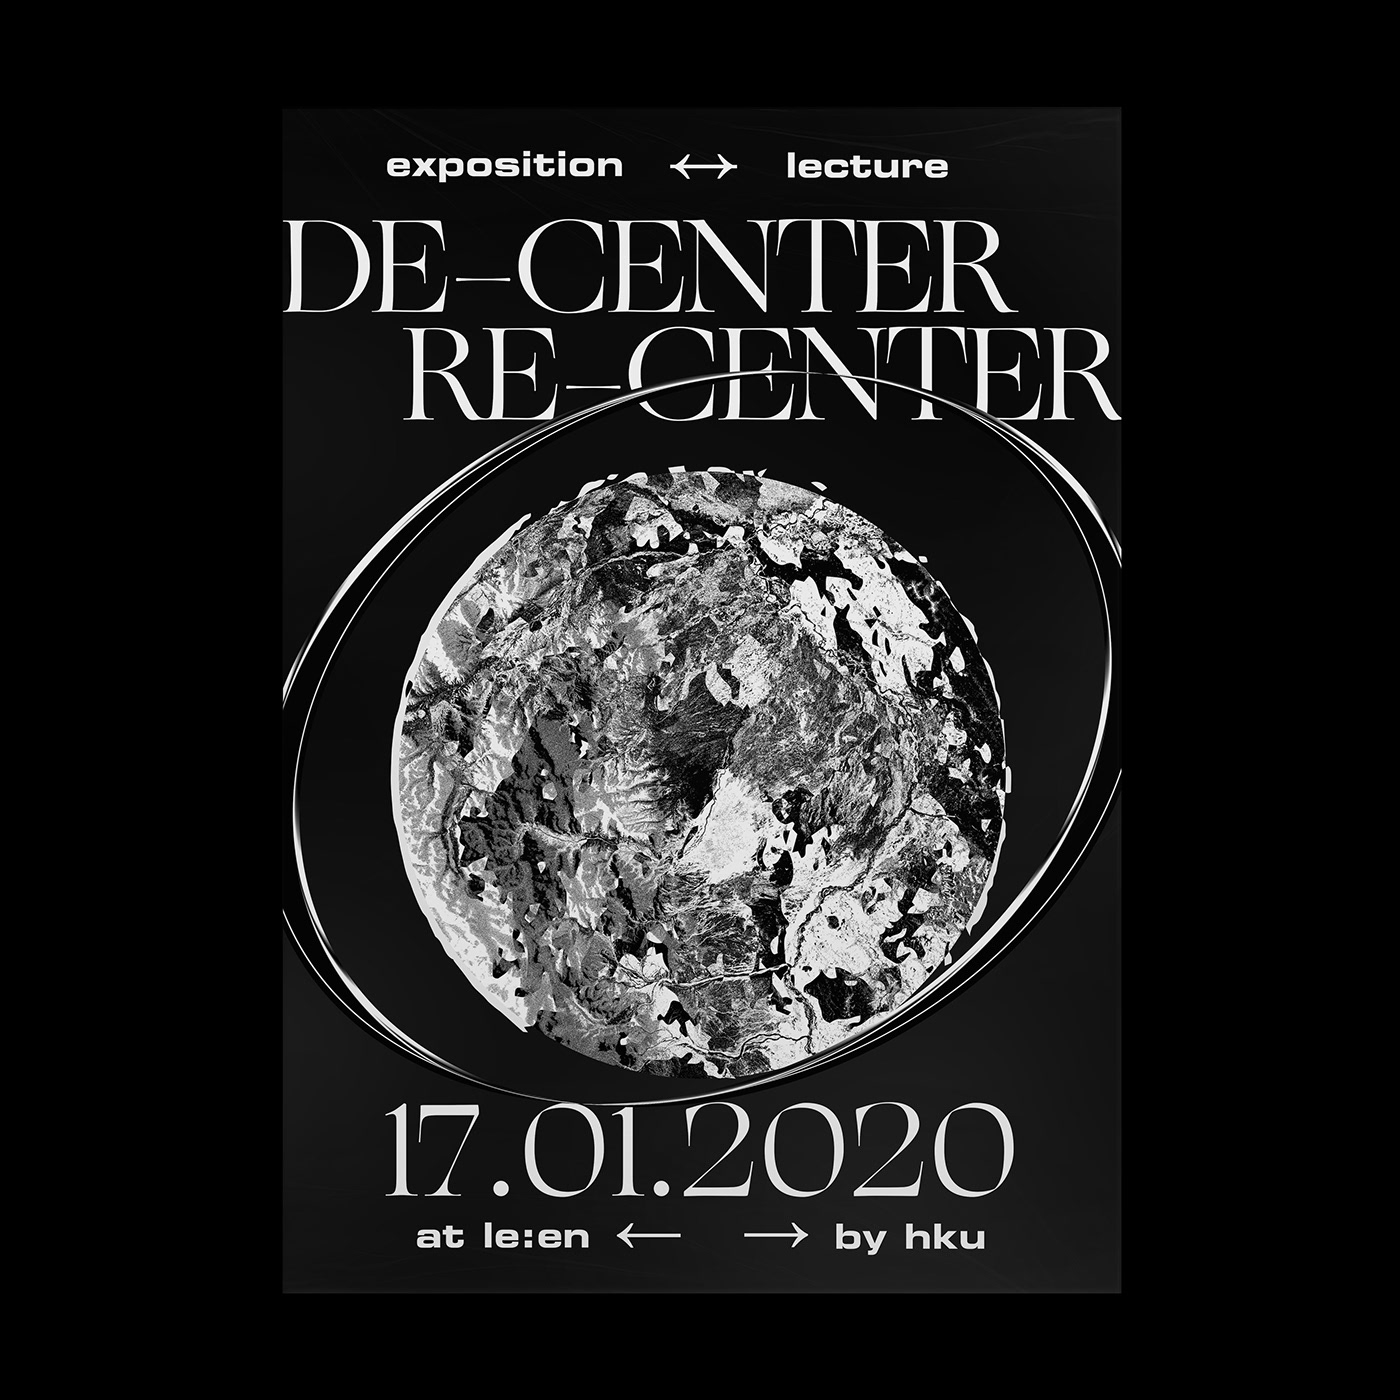 Re-Center De-Center expo